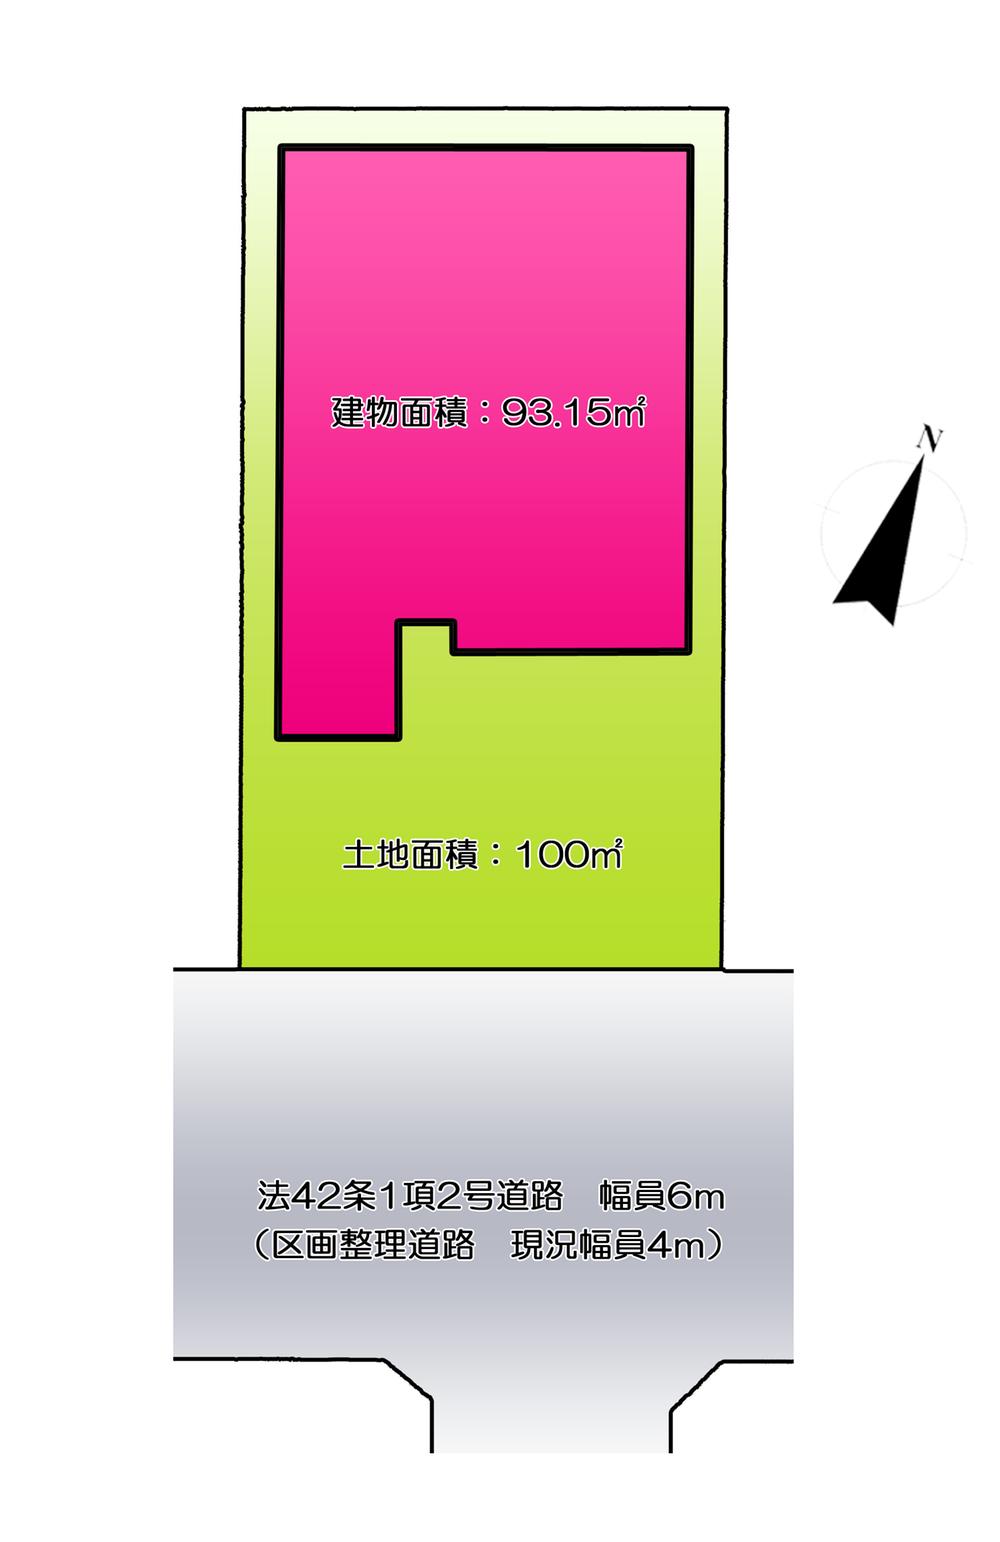 Compartment figure. 27,800,000 yen, 4LDK, Land area 100 sq m , Building area 93.15 sq m